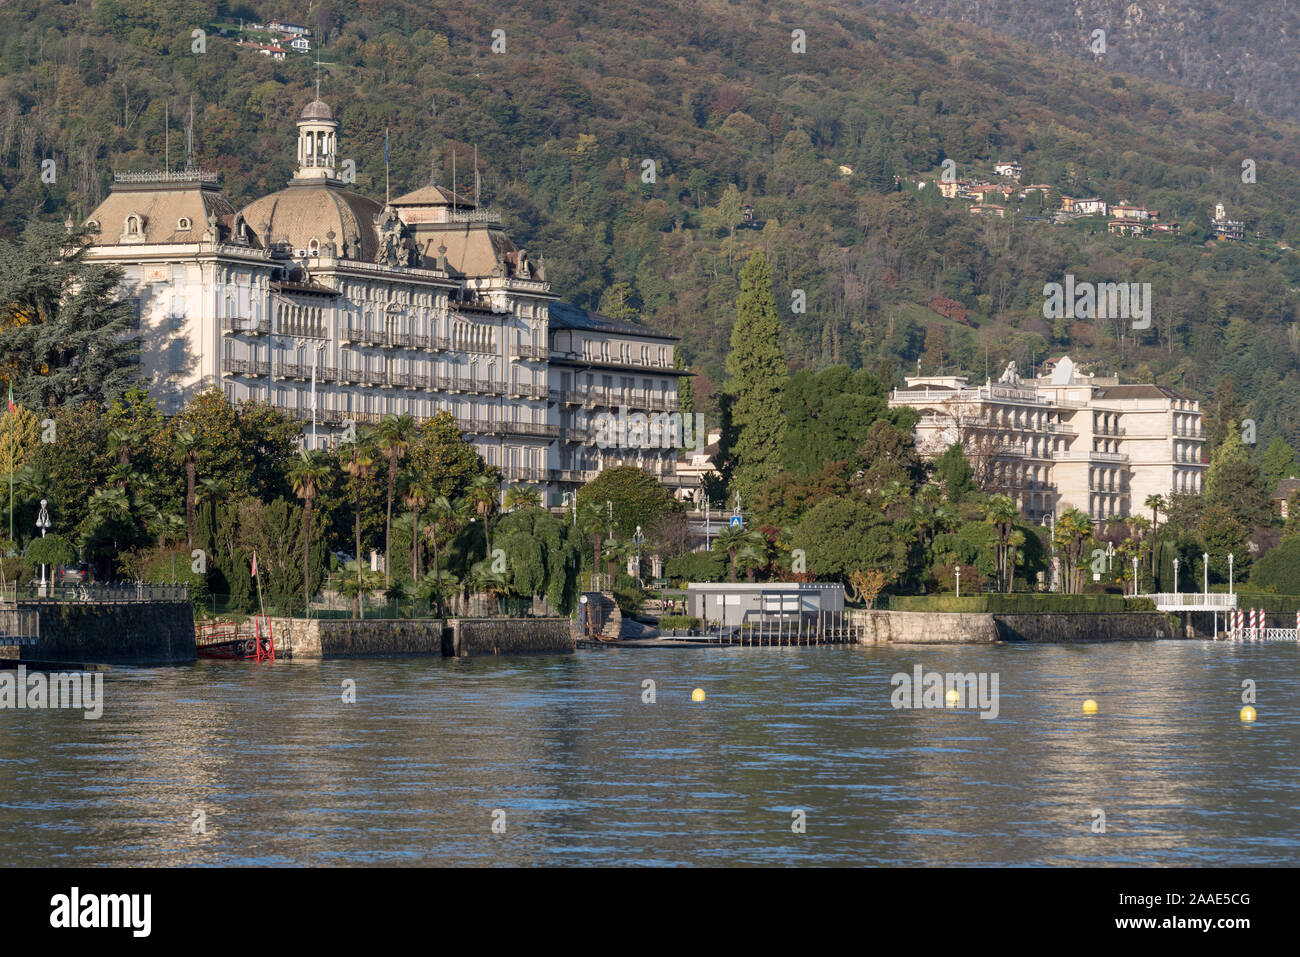 Grand Hotel des Iles Borromees in Stresa, famous tourist destination on Lake Maggiore in Northern Italy Stock Photo